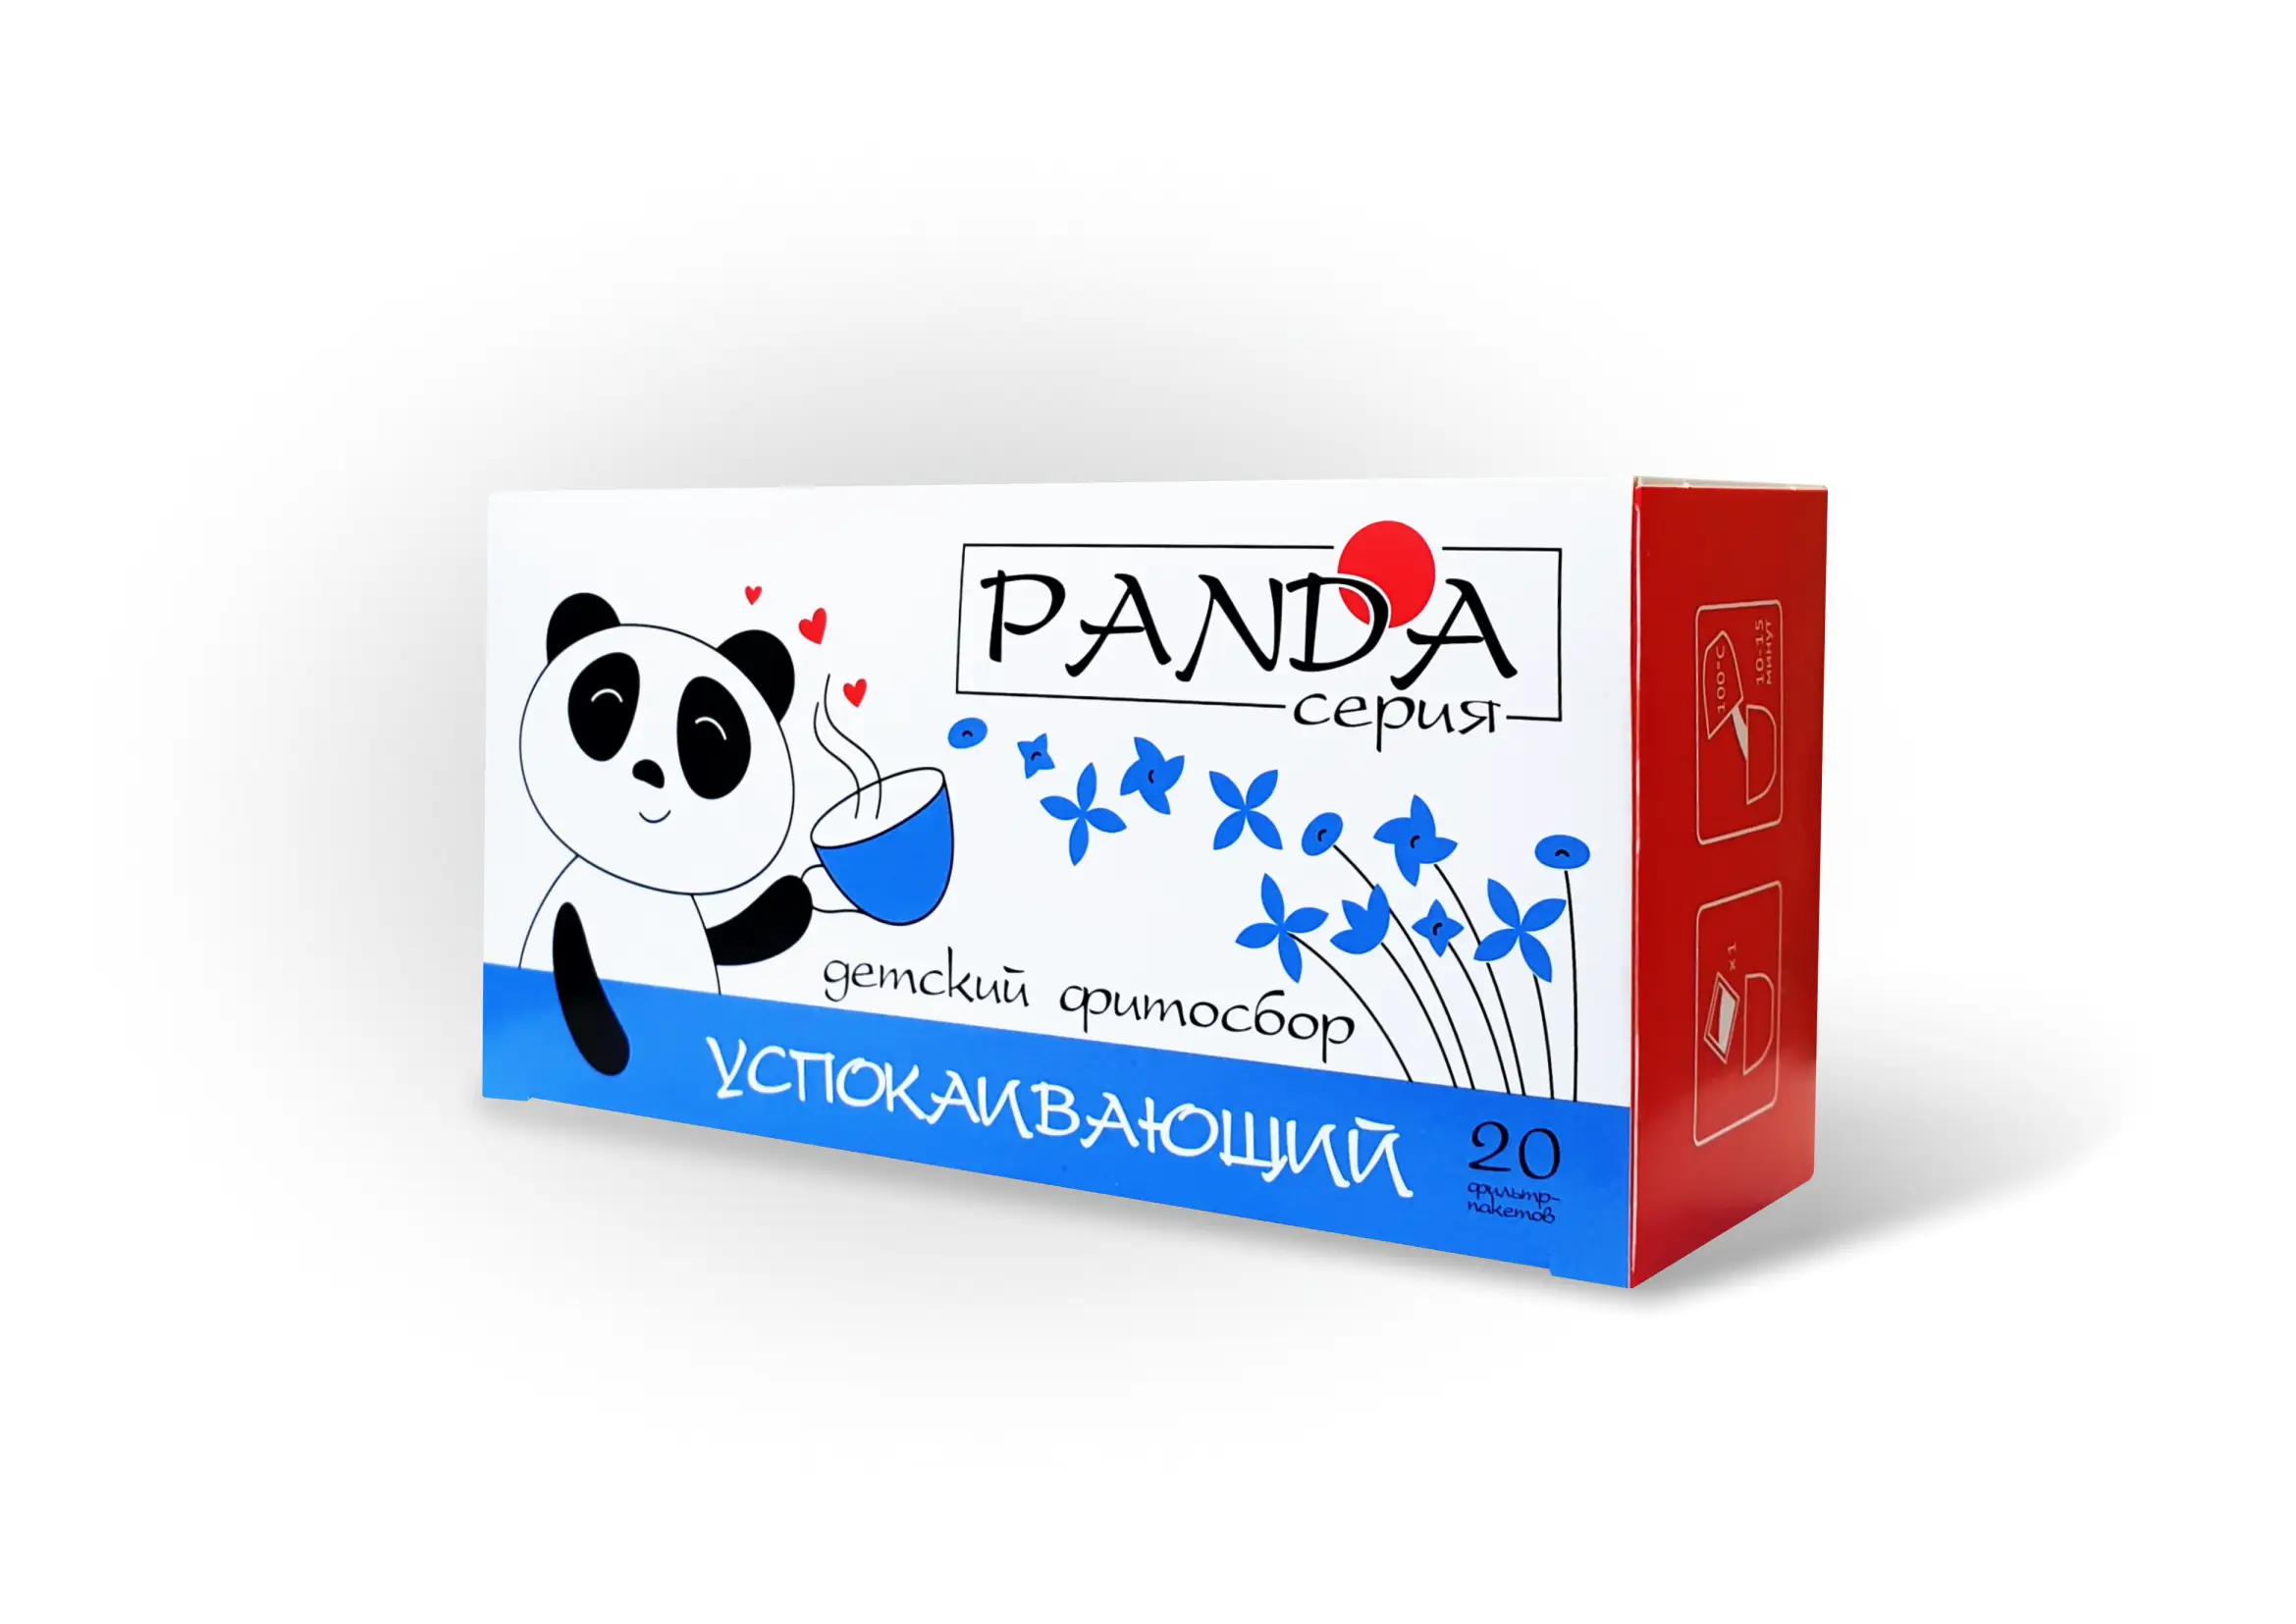 Травяной фитосбор Успокаивающий серия Панда 20 фильтр-пакетов по 1,5 гр.